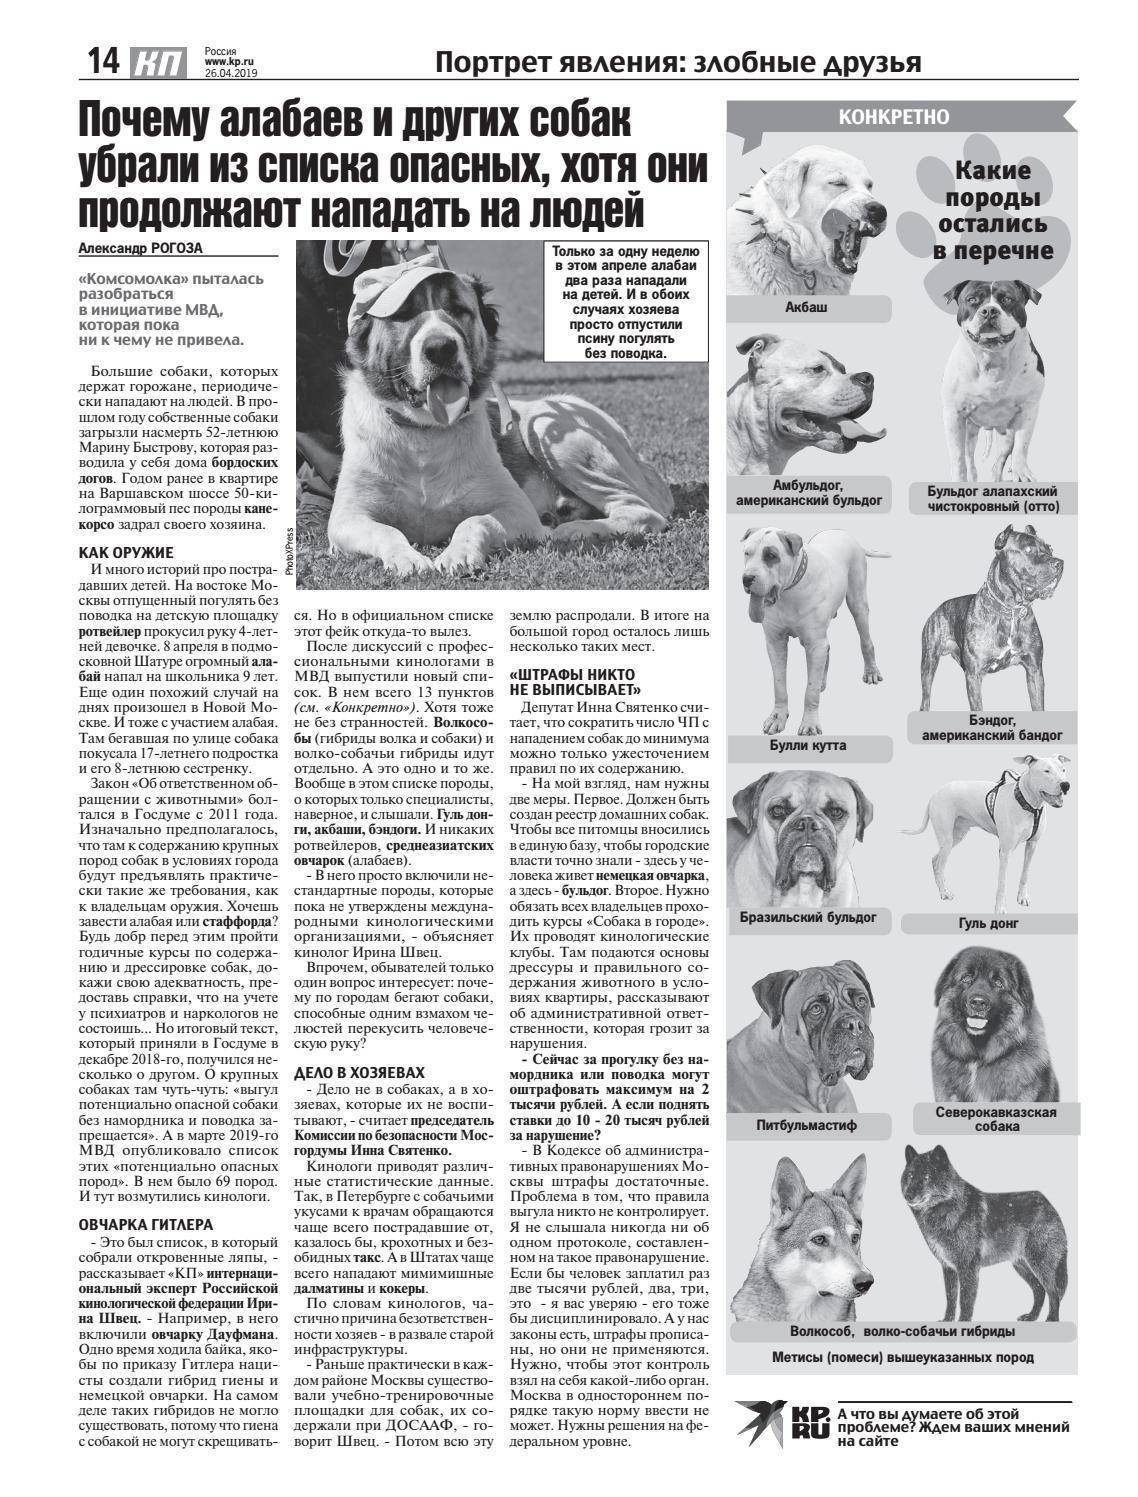 Перечень потенциально опасных собак правительство. Список опасных пород собак 2021. Список опасных собак запрещенных в России. Список потенциально опасных пород собак в России 2021. Опасные породы собак список в РФ 2021.